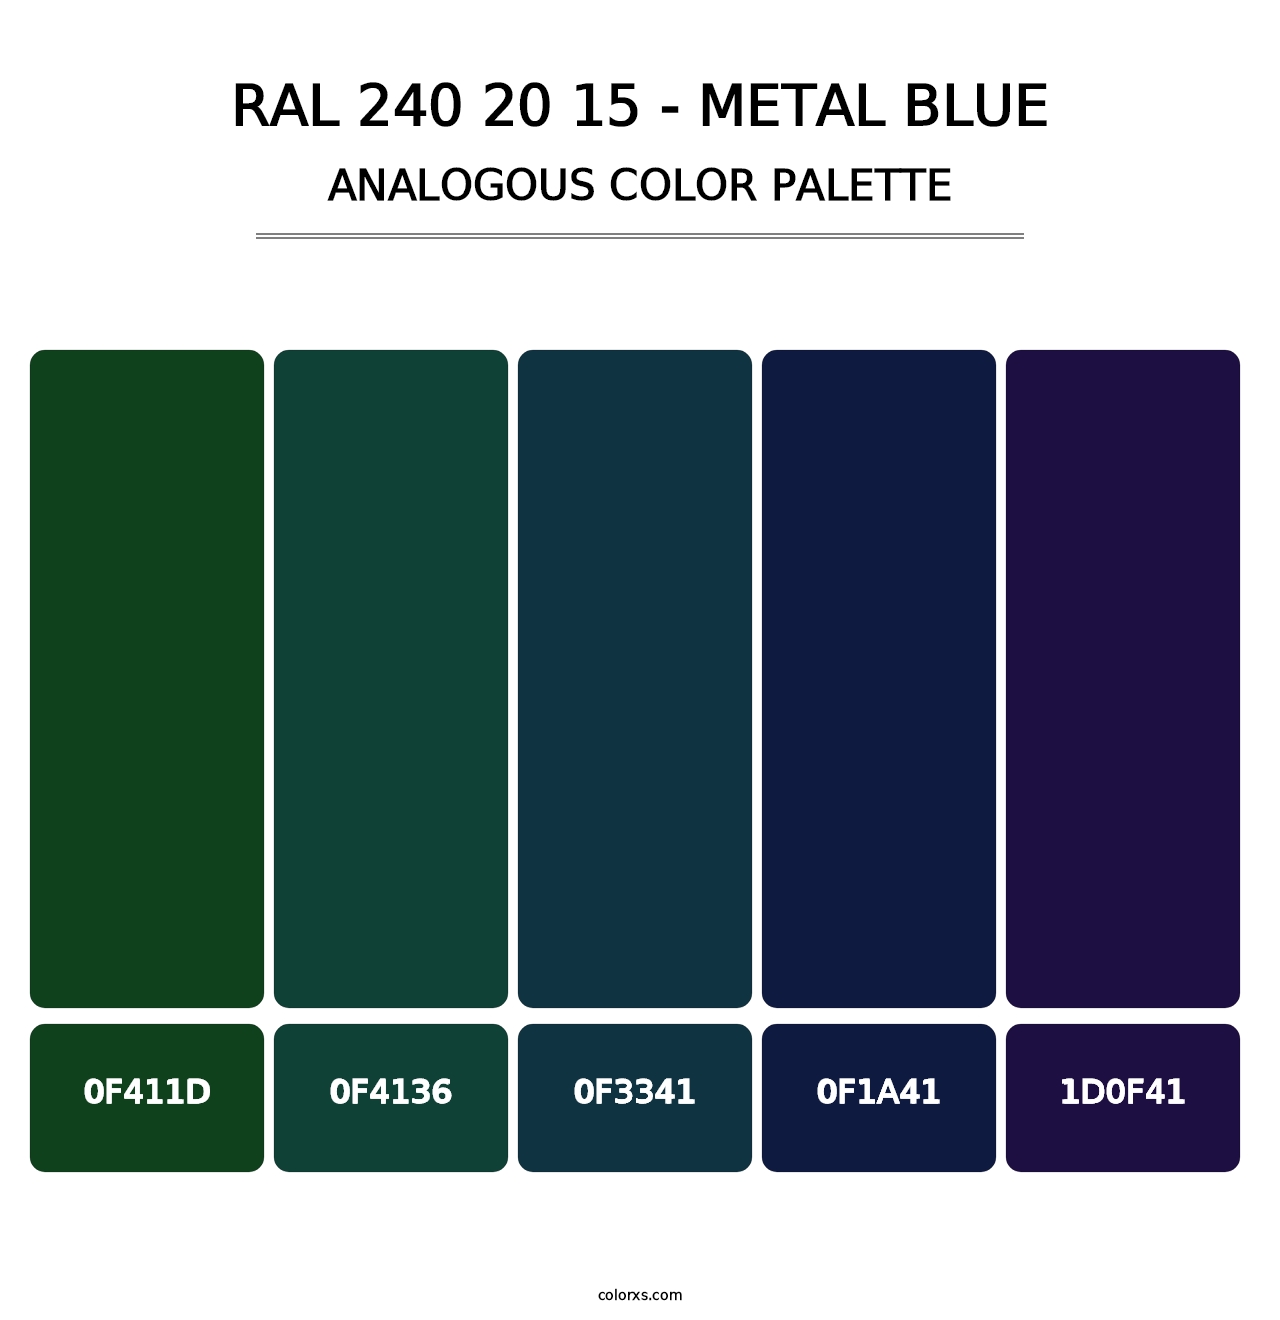 RAL 240 20 15 - Metal Blue - Analogous Color Palette